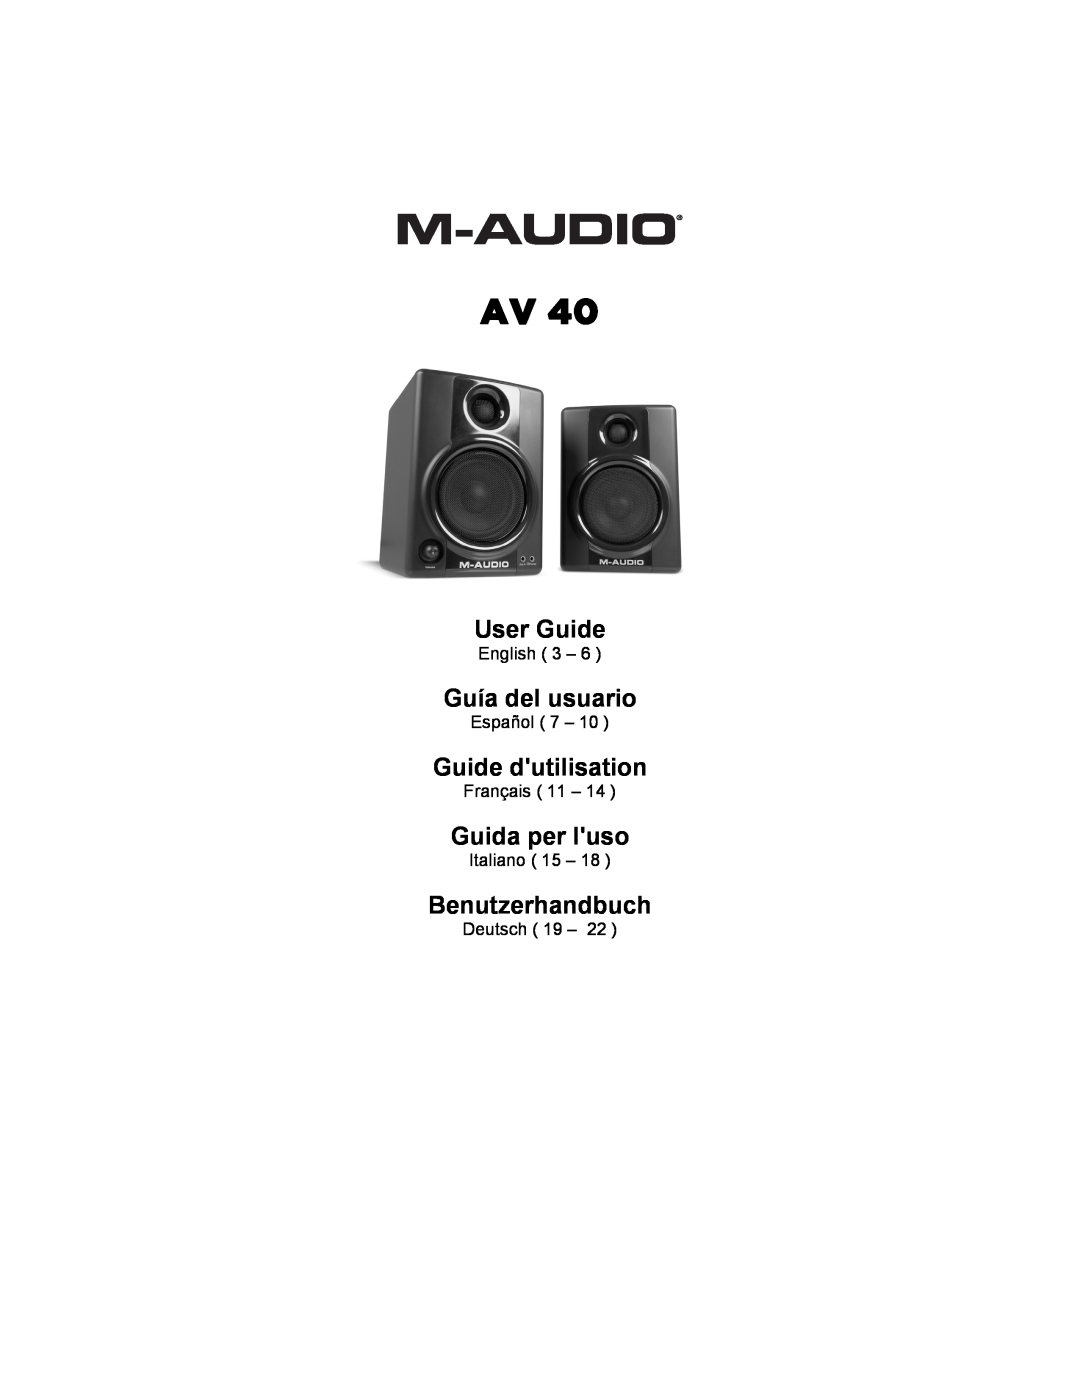 M-Audio AV 40 manual AV40, StudiophileTM, ユーザーズ・マニュアル 